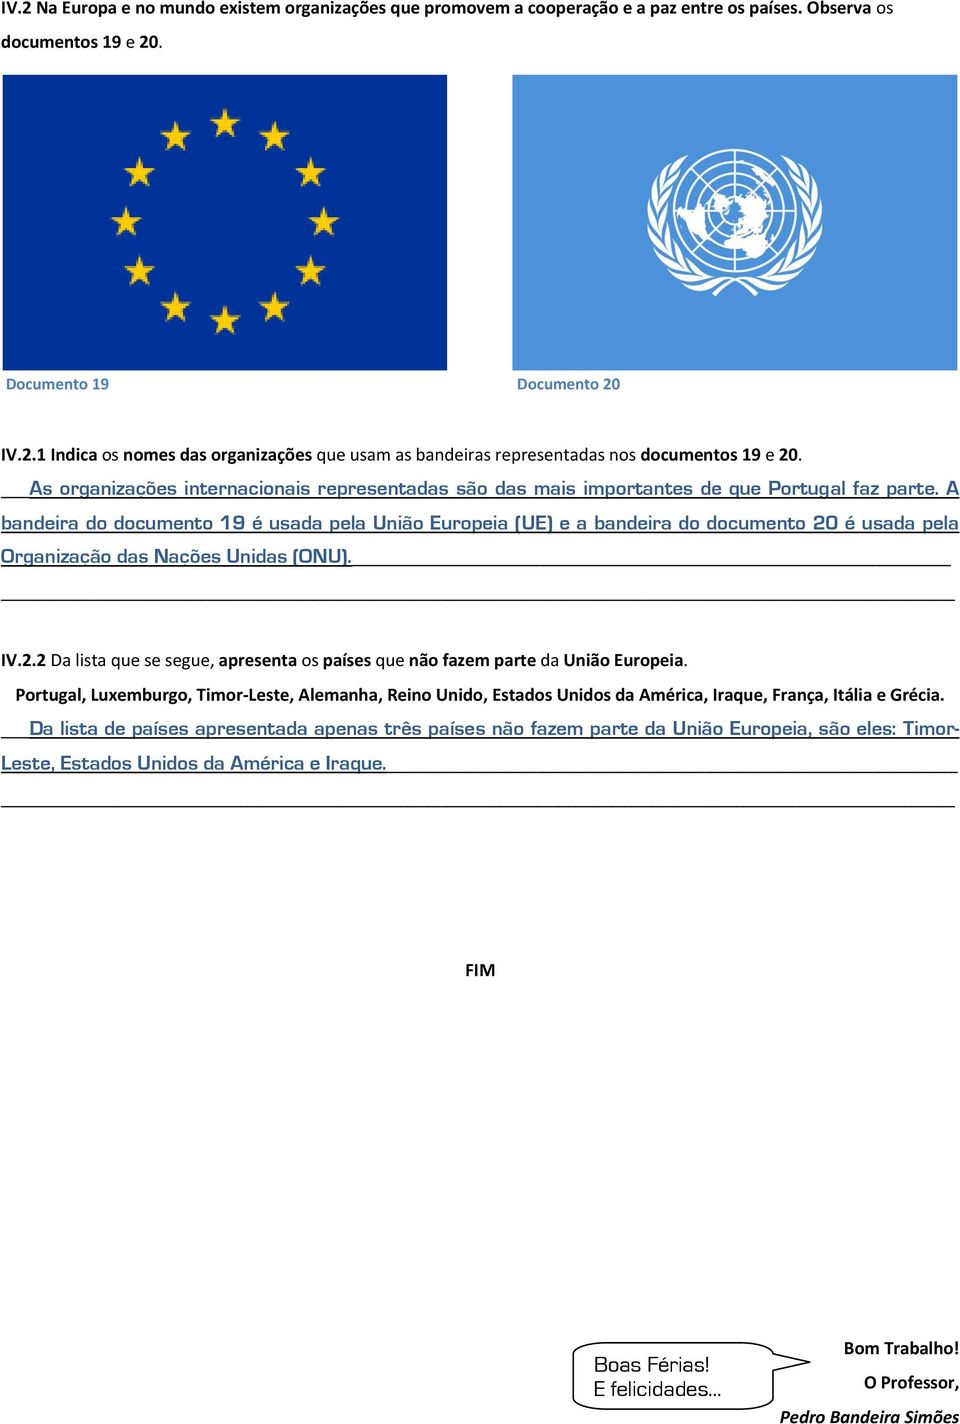 A bandeira do documento 19 é usada pela União Europeia (UE) e a bandeira do documento 20 é usada pela Organização das Nações Unidas (ONU). IV.2.2 Da lista que se segue, apresenta os países que não fazem parte da União Europeia.